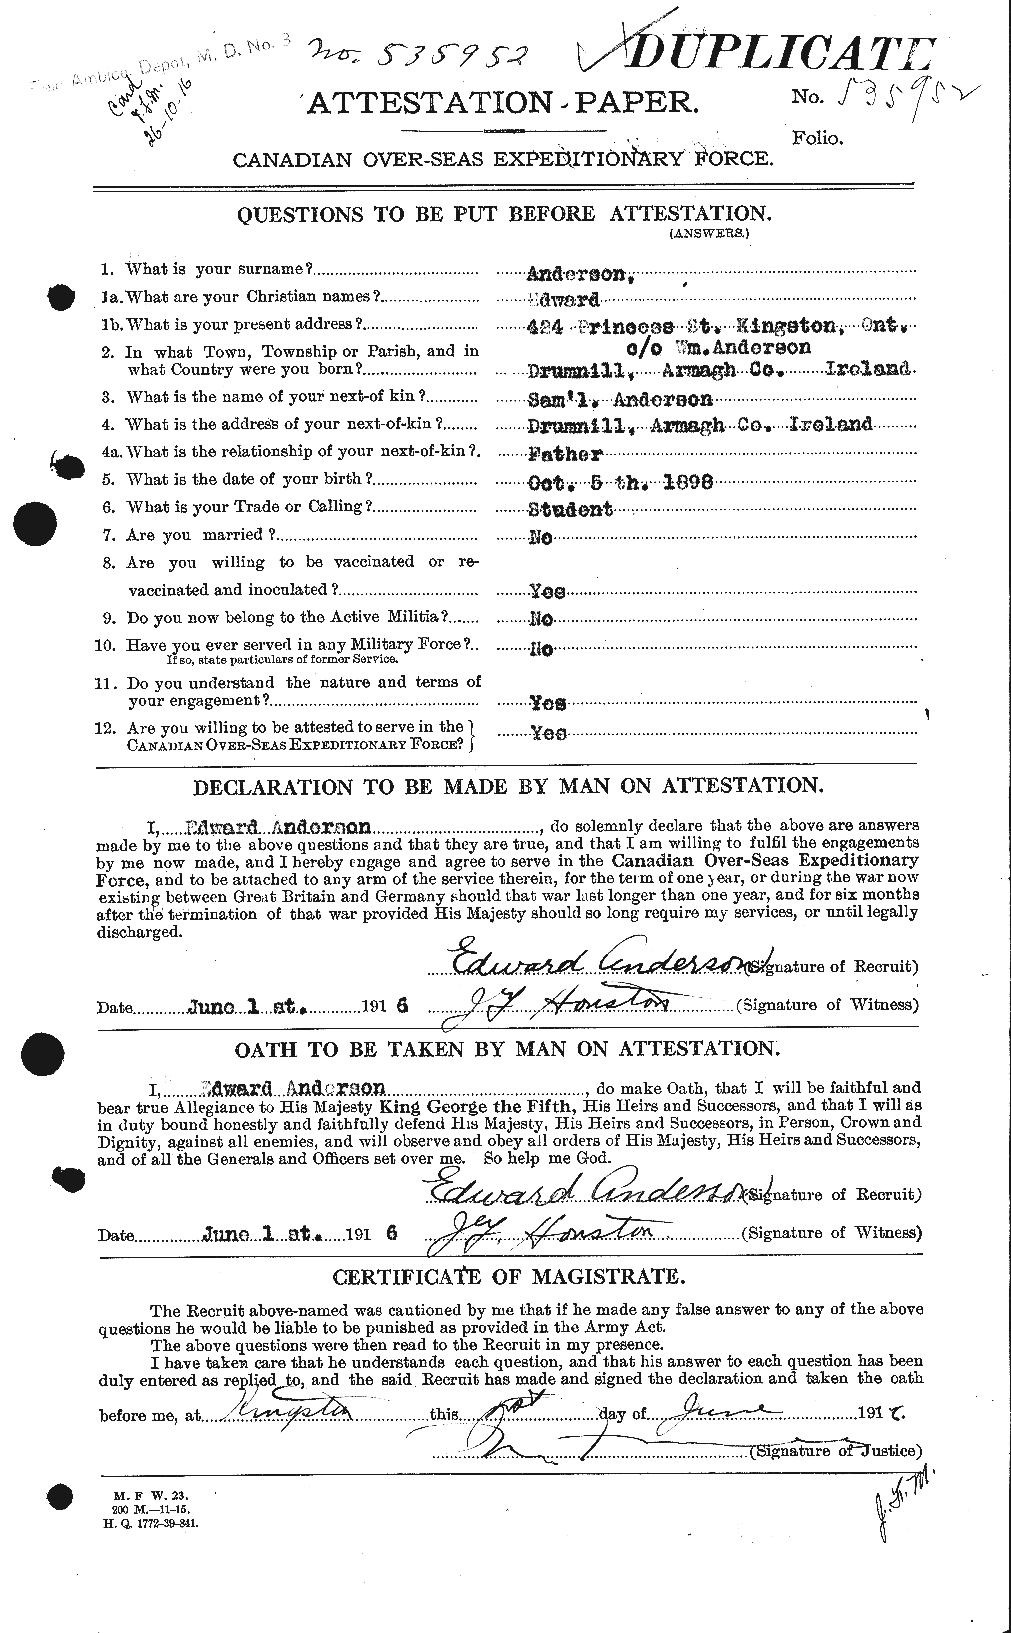 Dossiers du Personnel de la Première Guerre mondiale - CEC 209944a